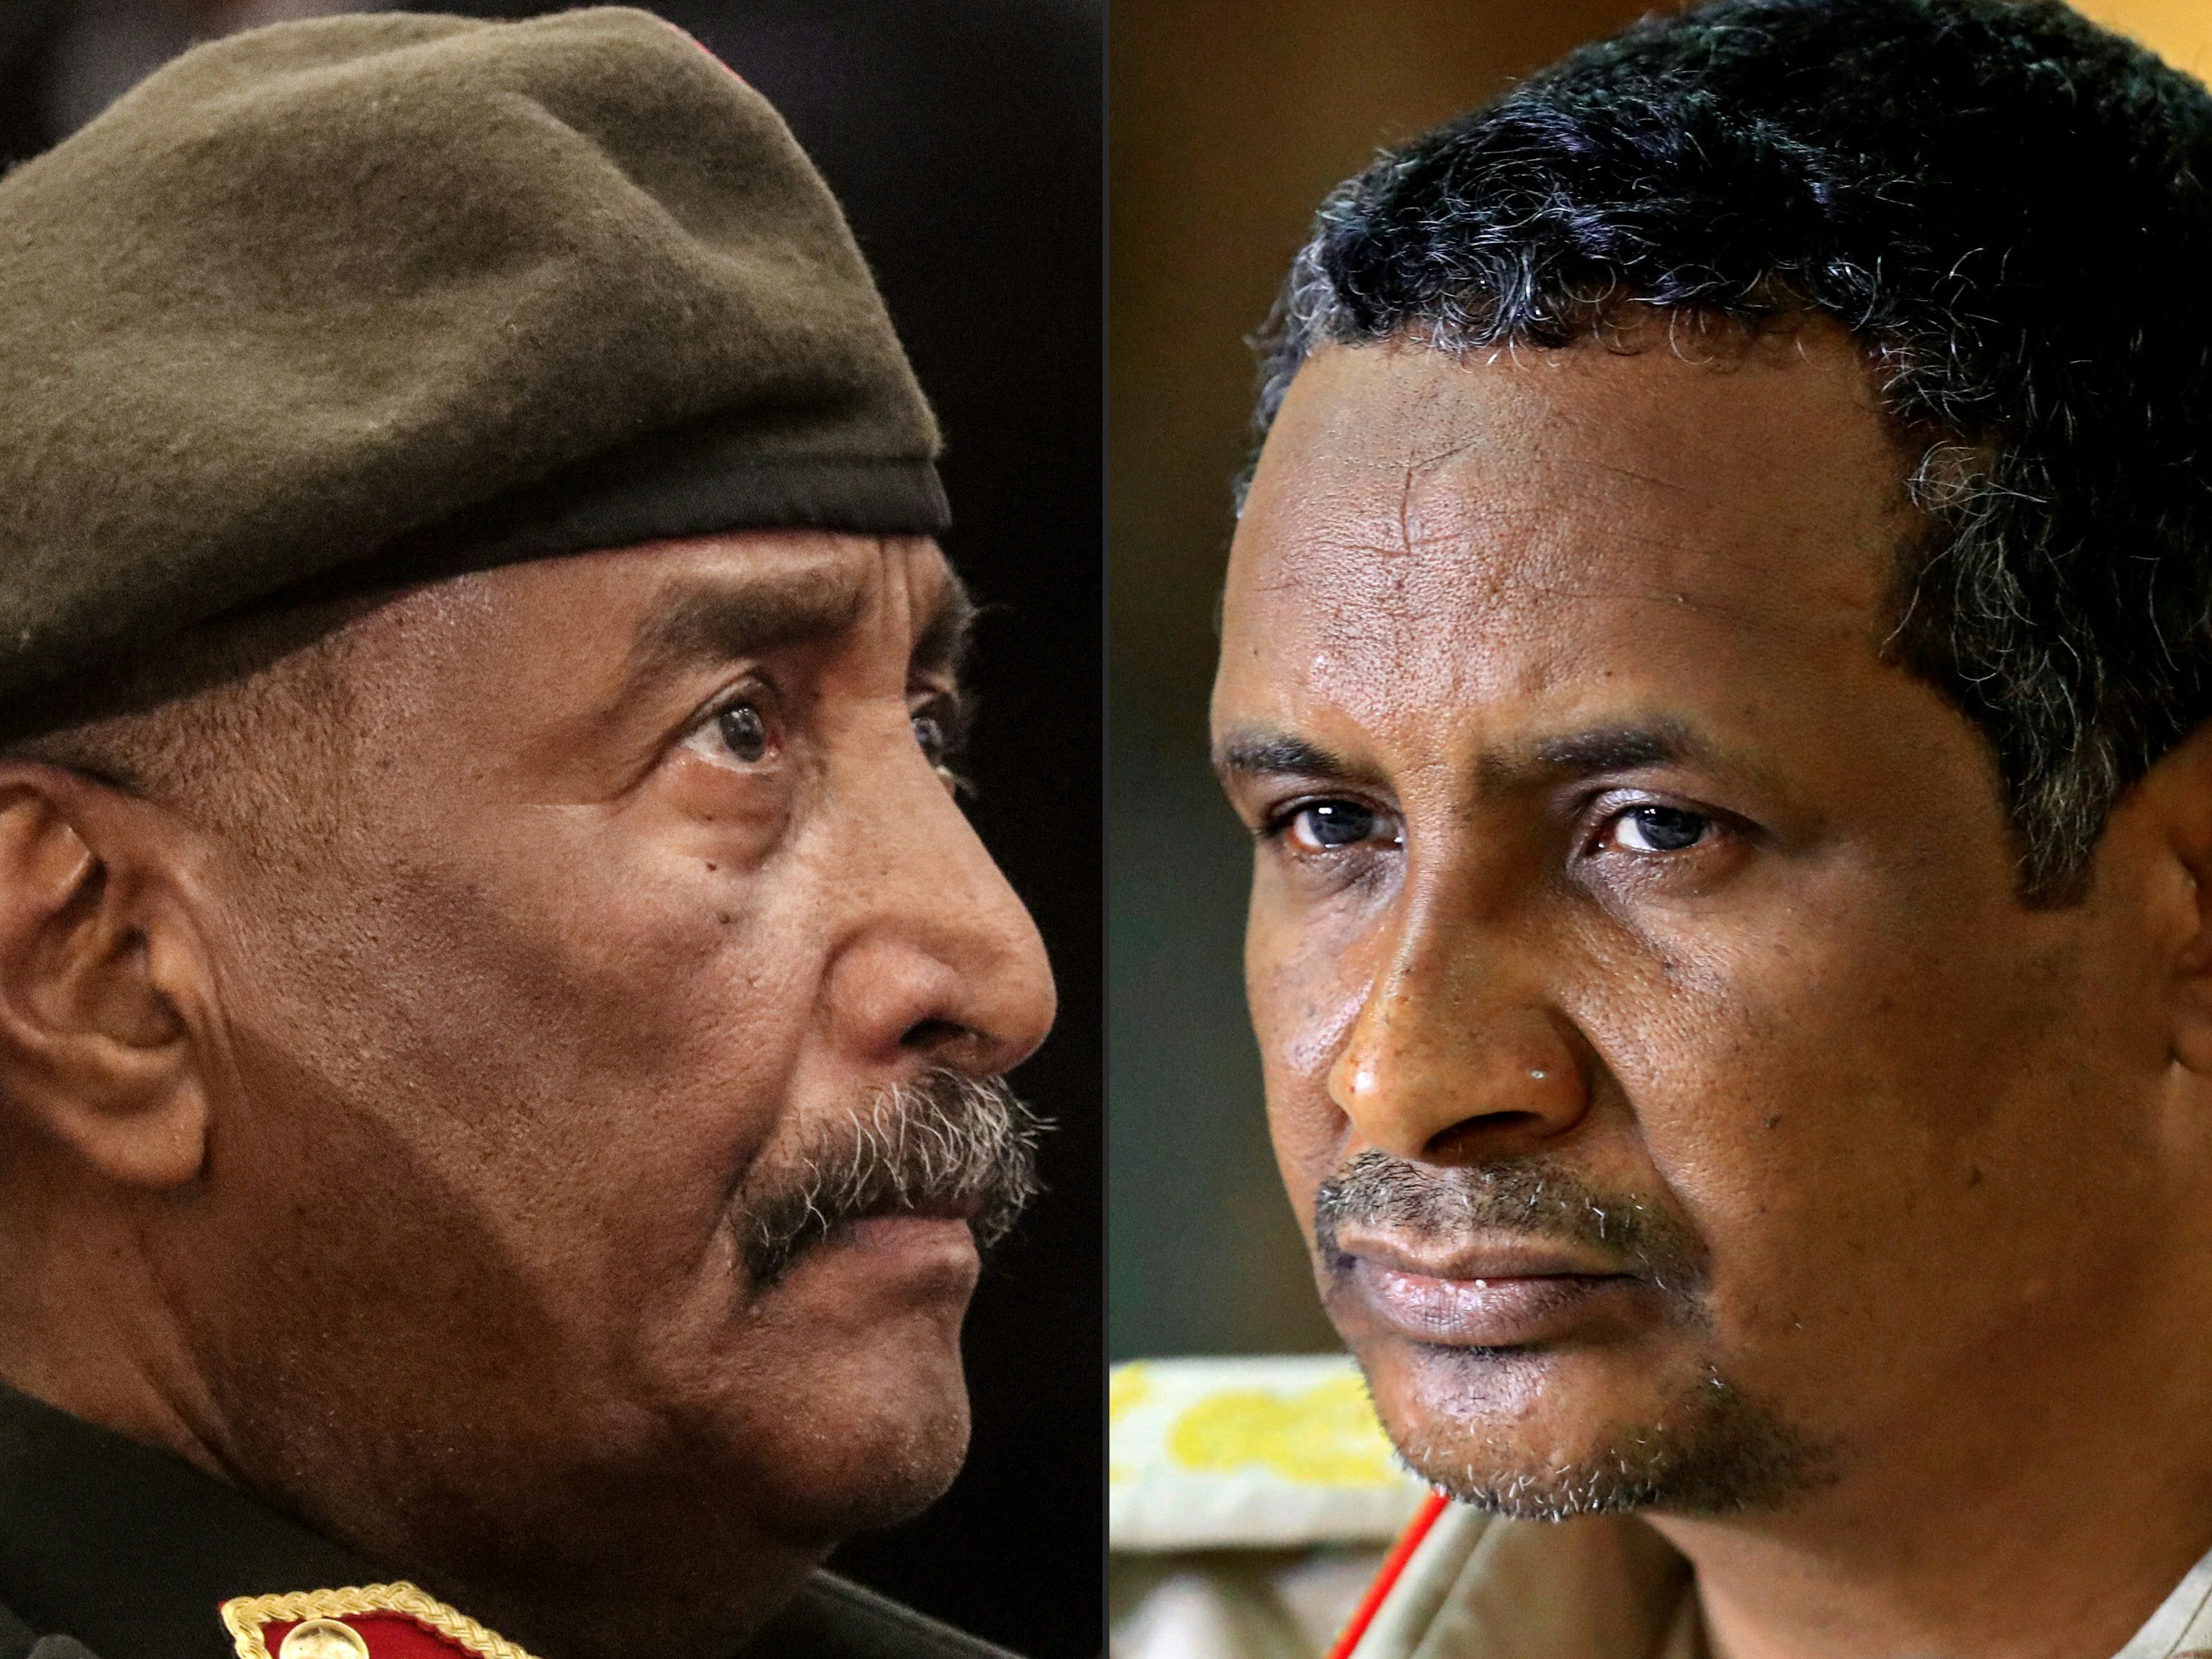 El jefe del ejército de Sudán, Abdel Fattah al-Burhan (izq.), y el comandante paramilitar de las Fuerzas de Apoyo Rápido de Sudán, el general Mohamed Hamdan Daglo (Hemedti) llevaron a cabo juntos un golpe de Estado para expulsar a los civiles del poder en octubre de 2021.